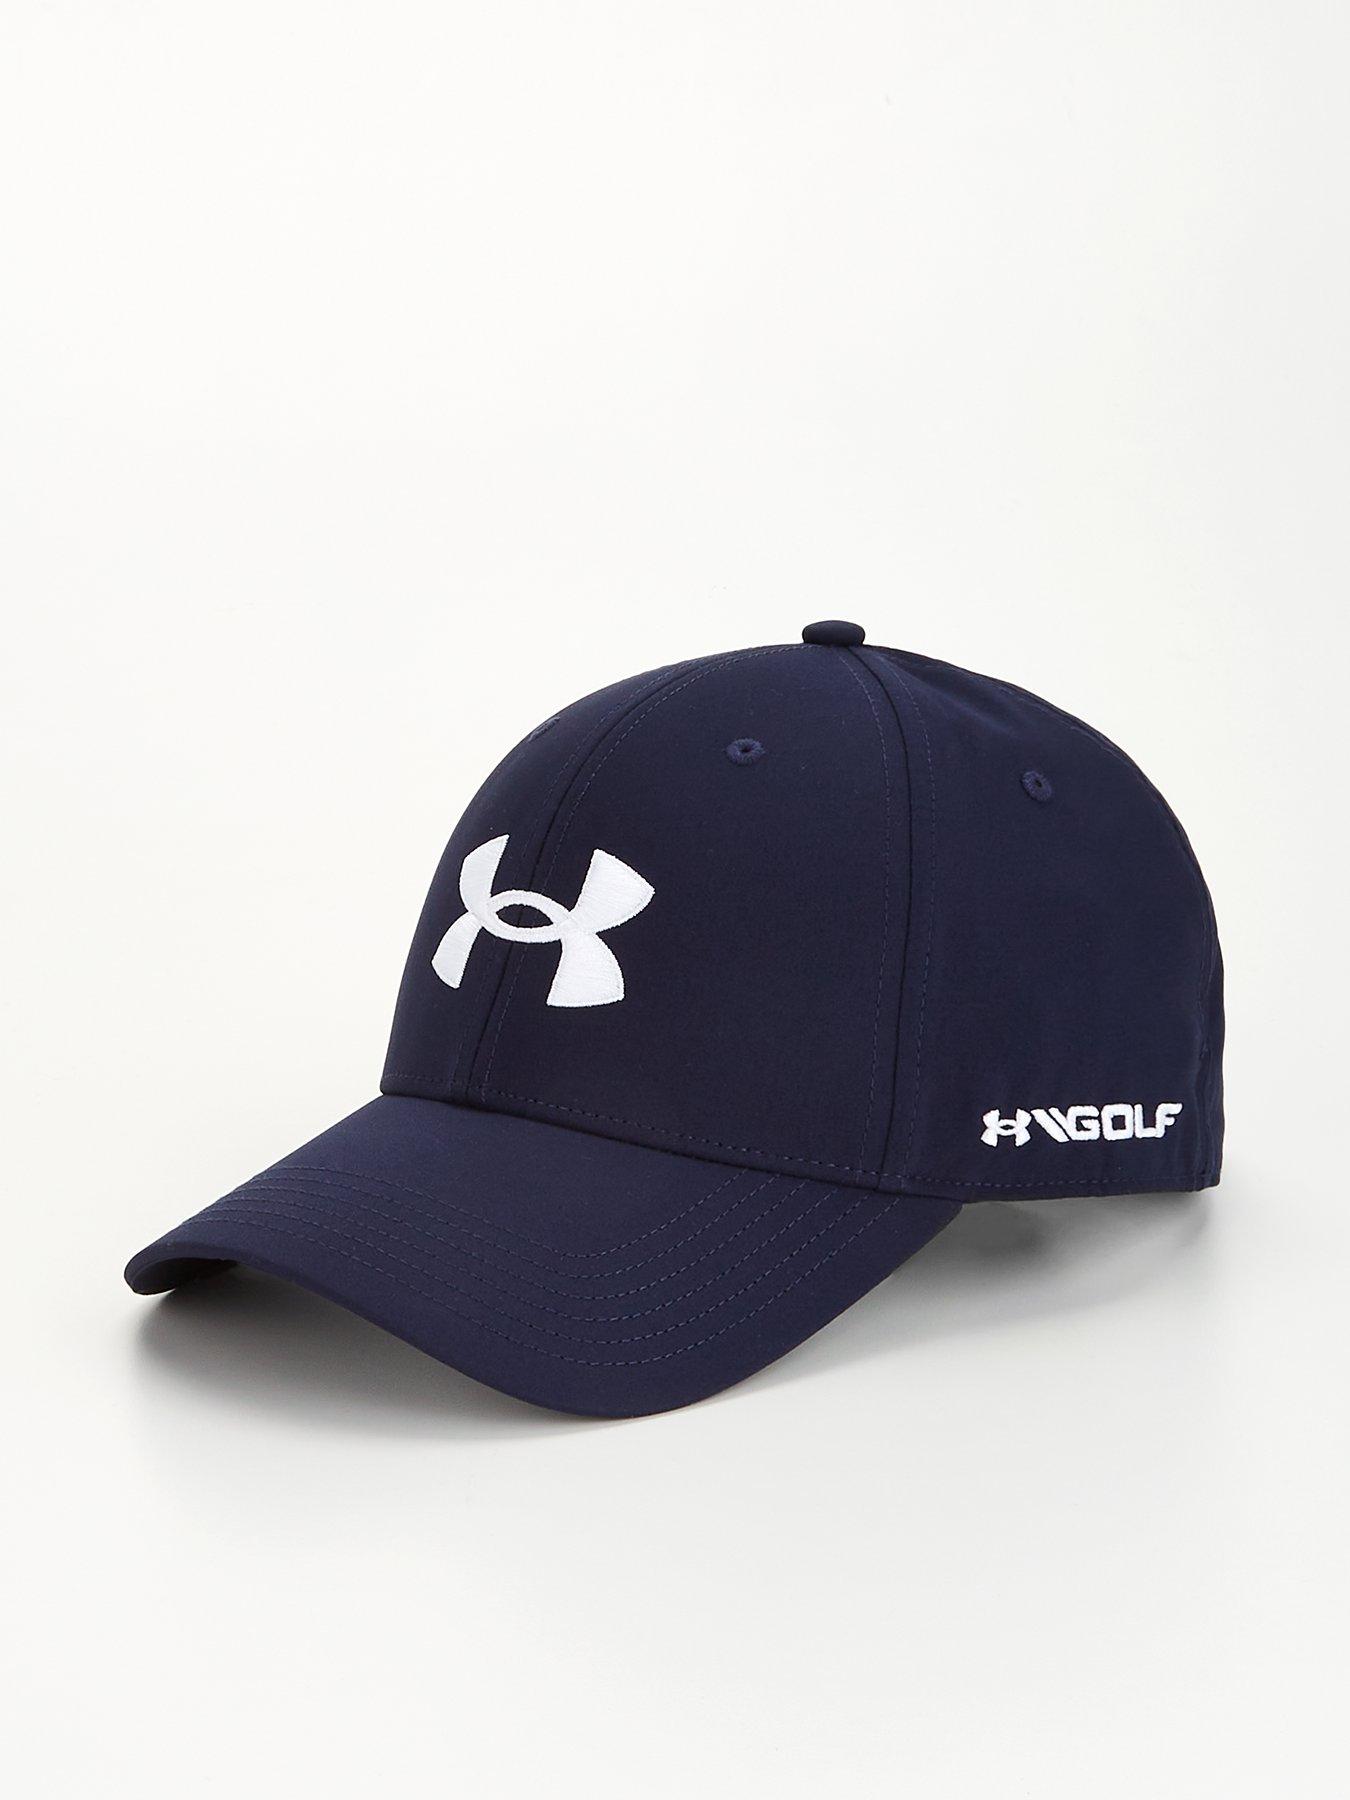 UNDER ARMOUR Golf 96 Hat - Navy